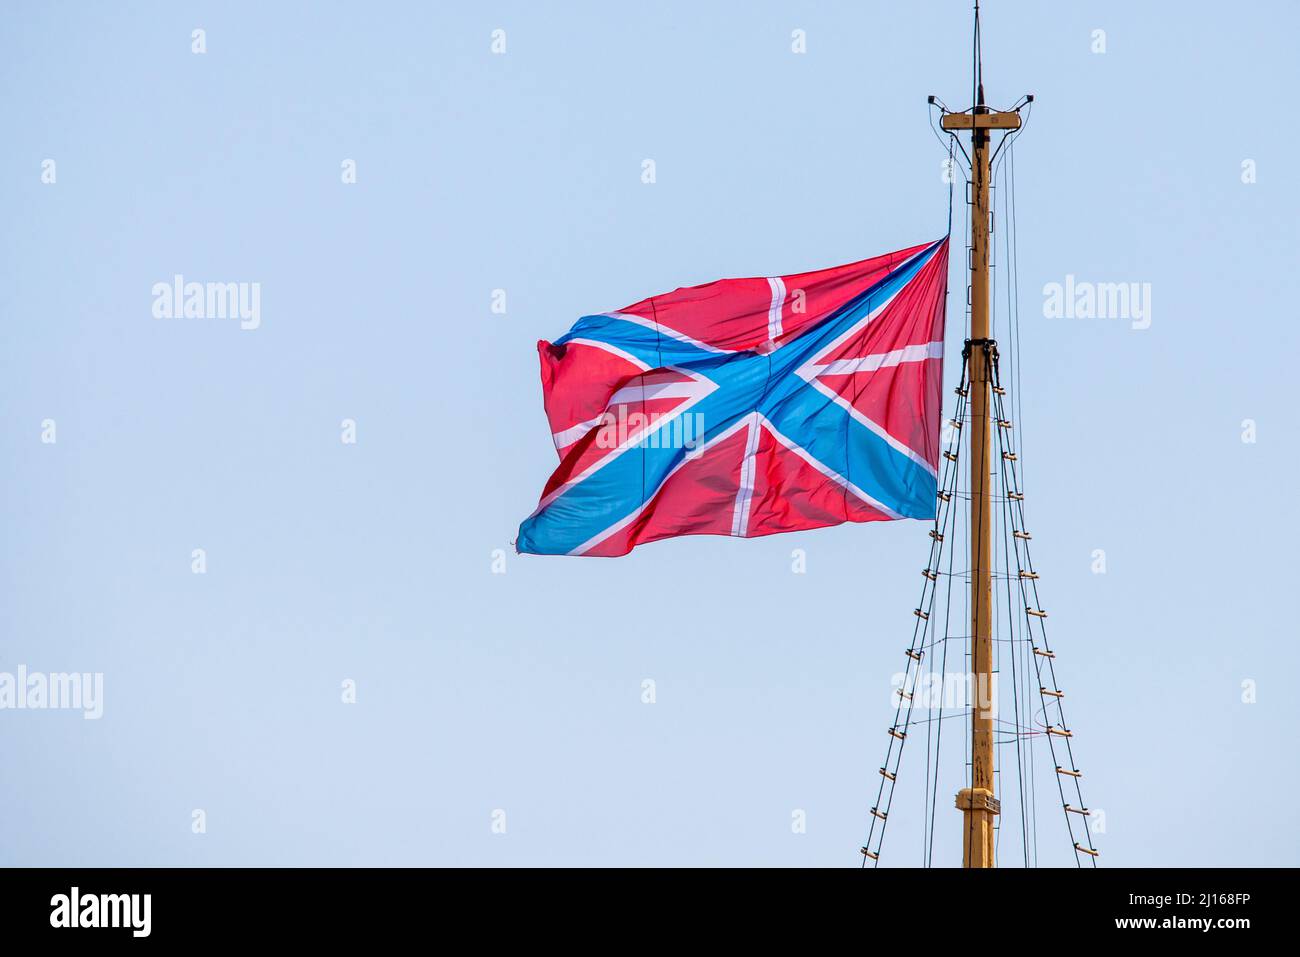 Jungs oder Bogenfahne des Schiffes und die Leibeigene Flagge Russlands. Flagge im Wind. Stockfoto